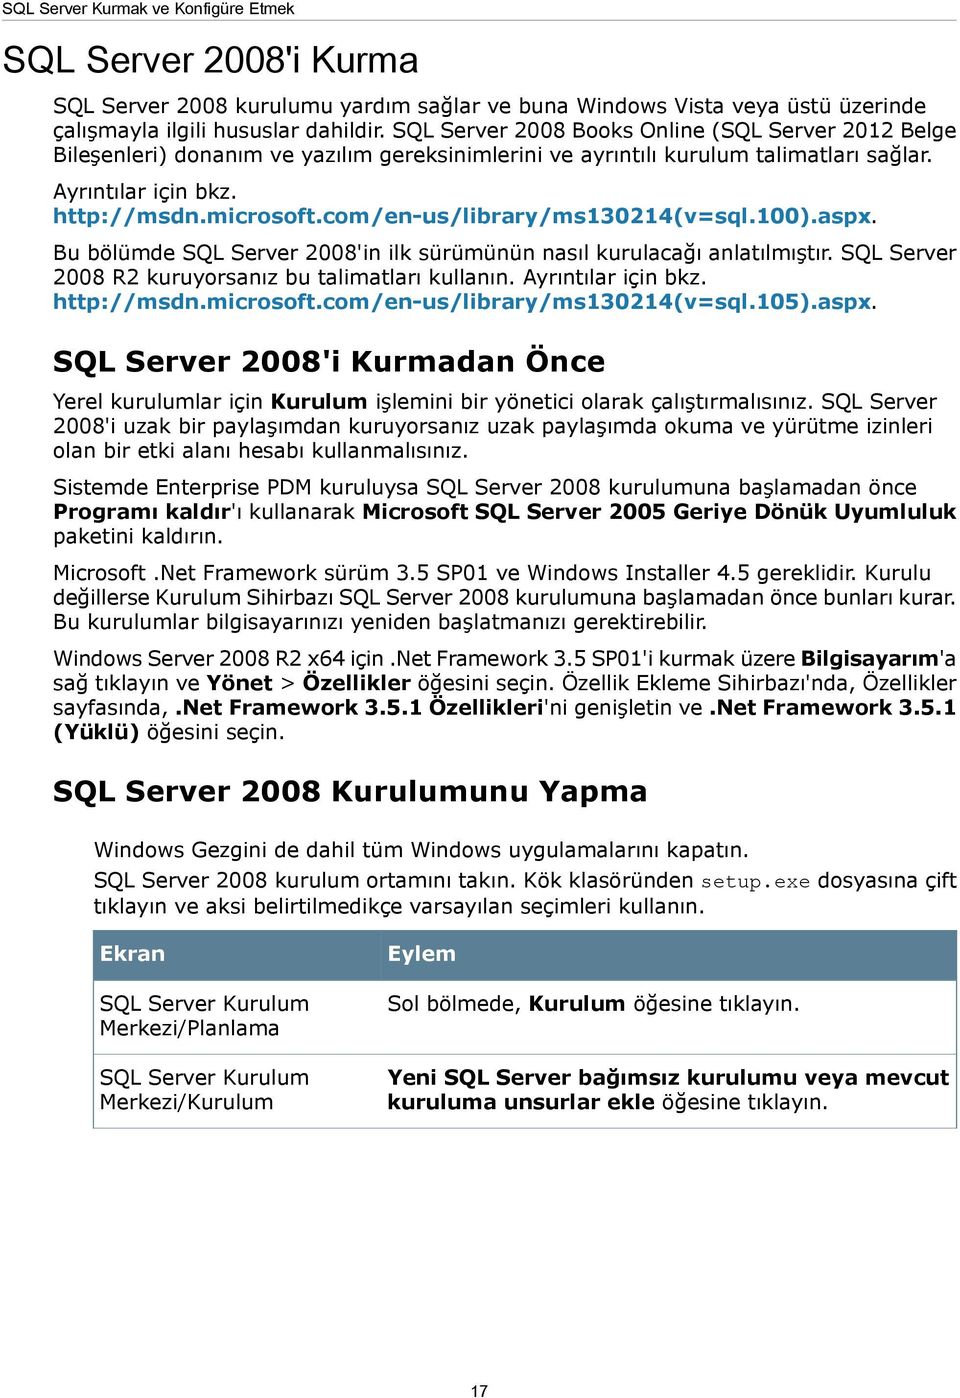 com/en-us/library/ms130214(v=sql.100).aspx. Bu bölümde SQL Server 2008'in ilk sürümünün nasıl kurulacağı anlatılmıştır. SQL Server 2008 R2 kuruyorsanız bu talimatları kullanın. Ayrıntılar için bkz.